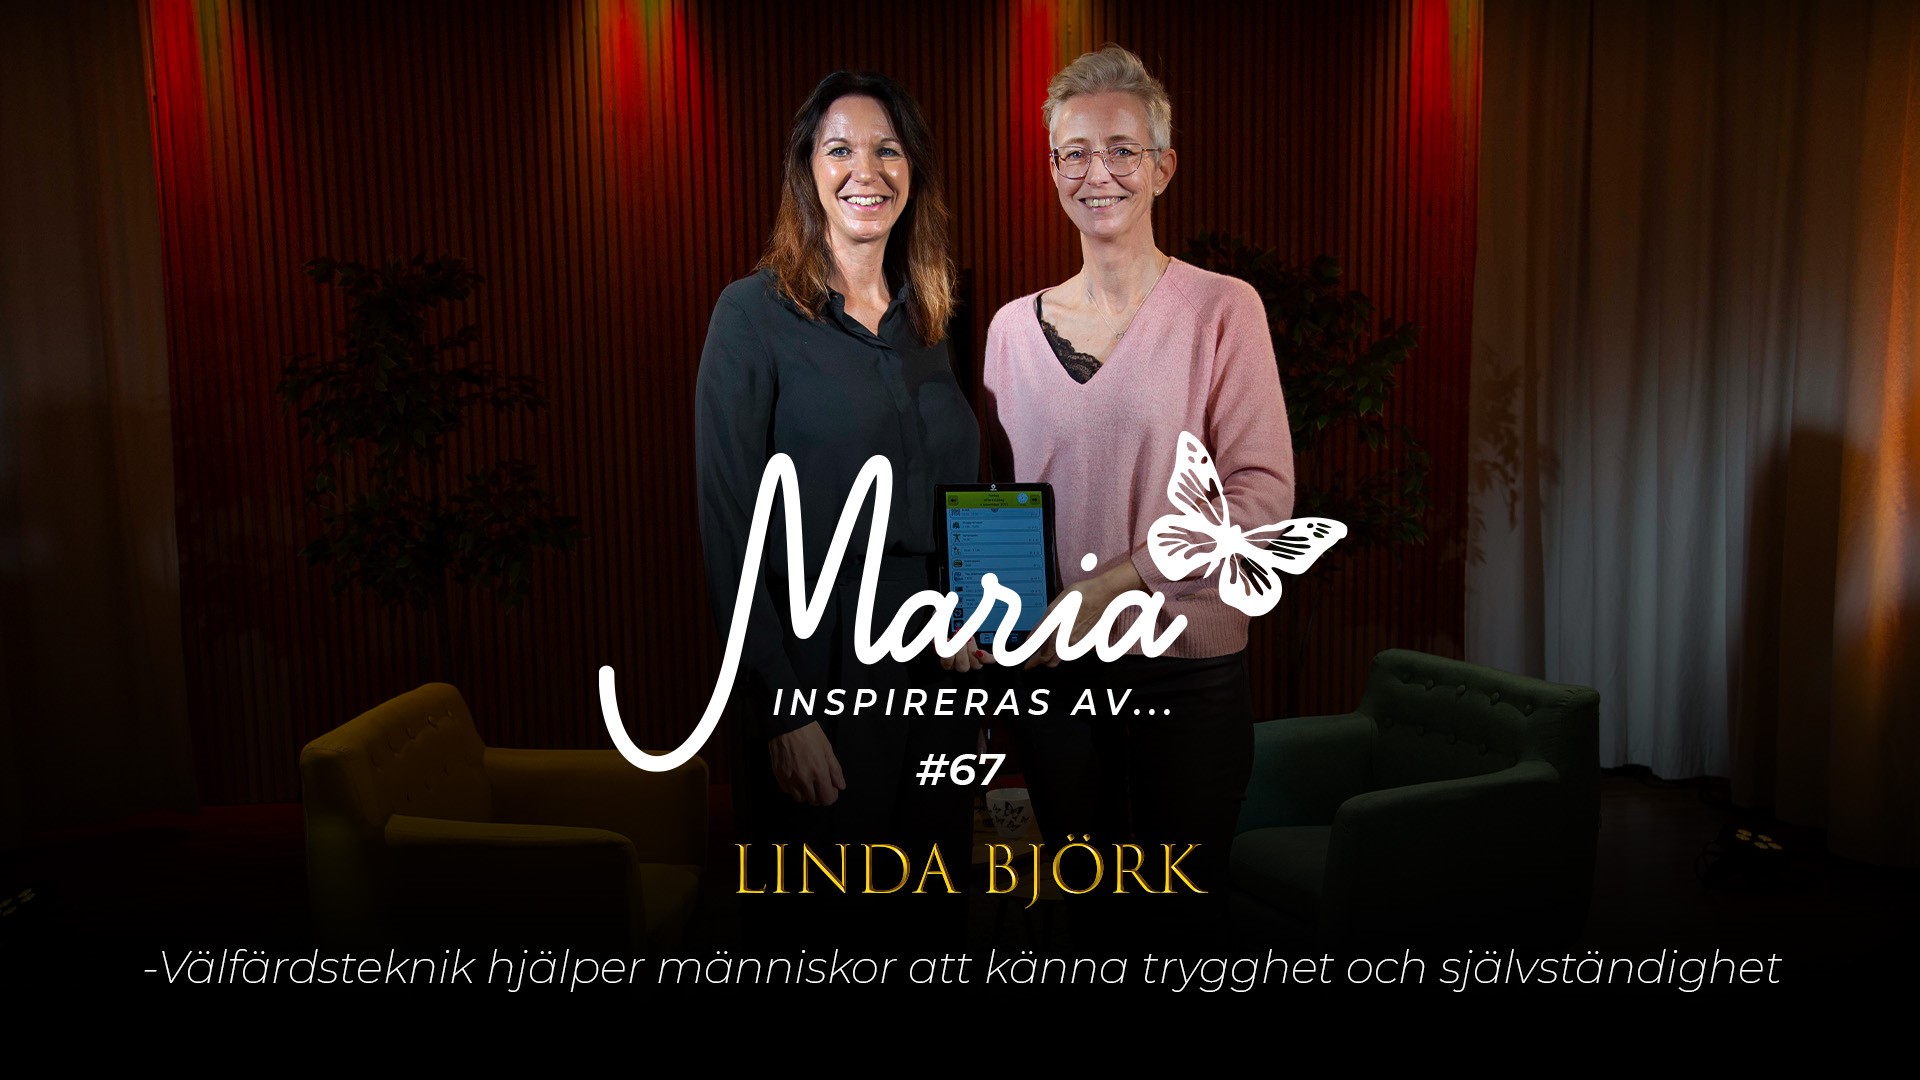 Maria inspireras av Linda Björk, avsnitt #67